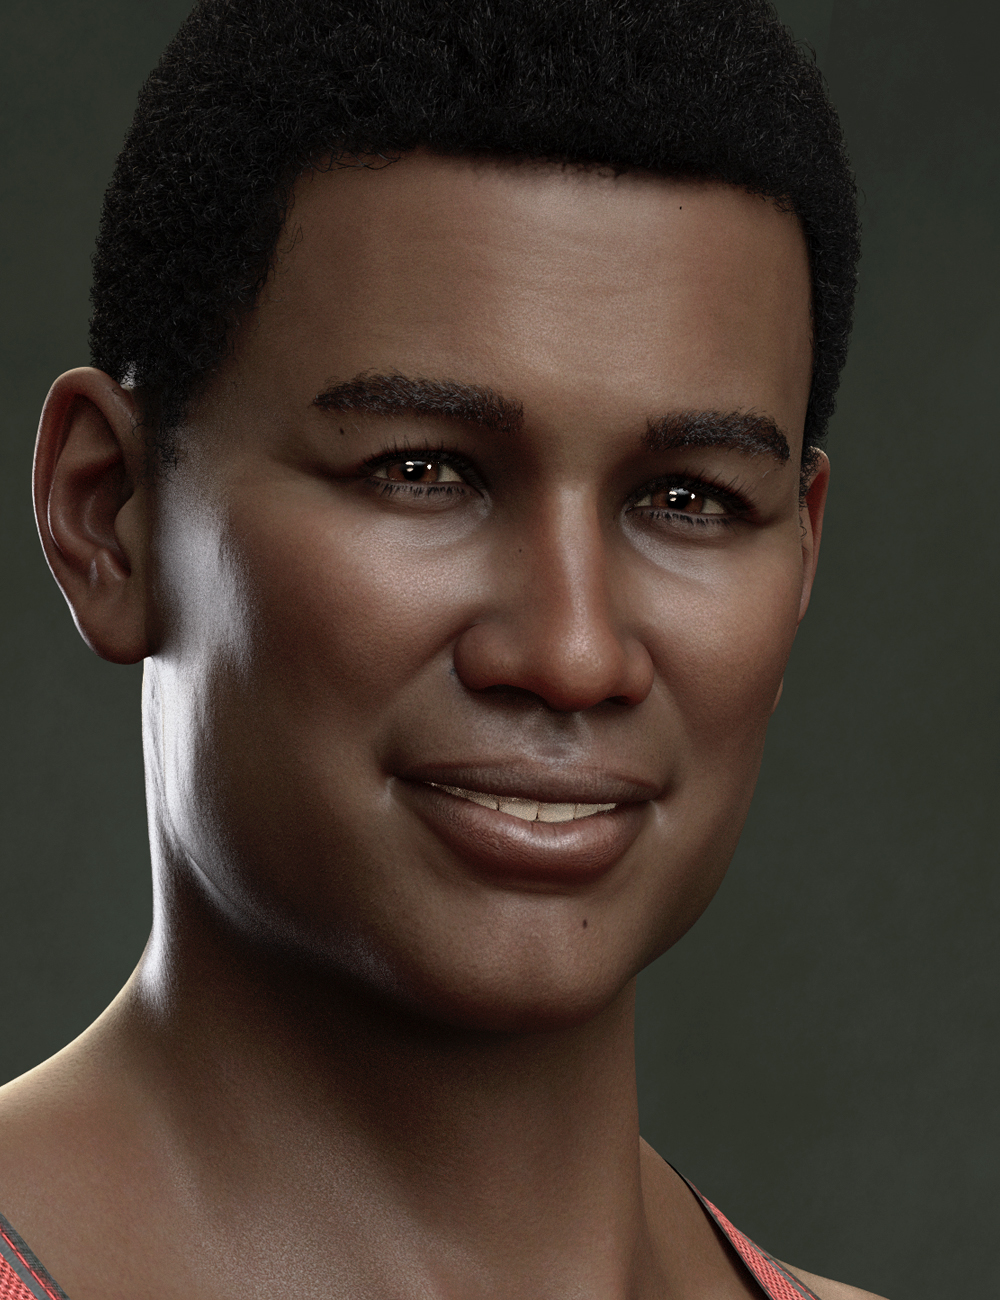 Leon HD for Genesis 8.1 Male by: Emrys, 3D Models by Daz 3D